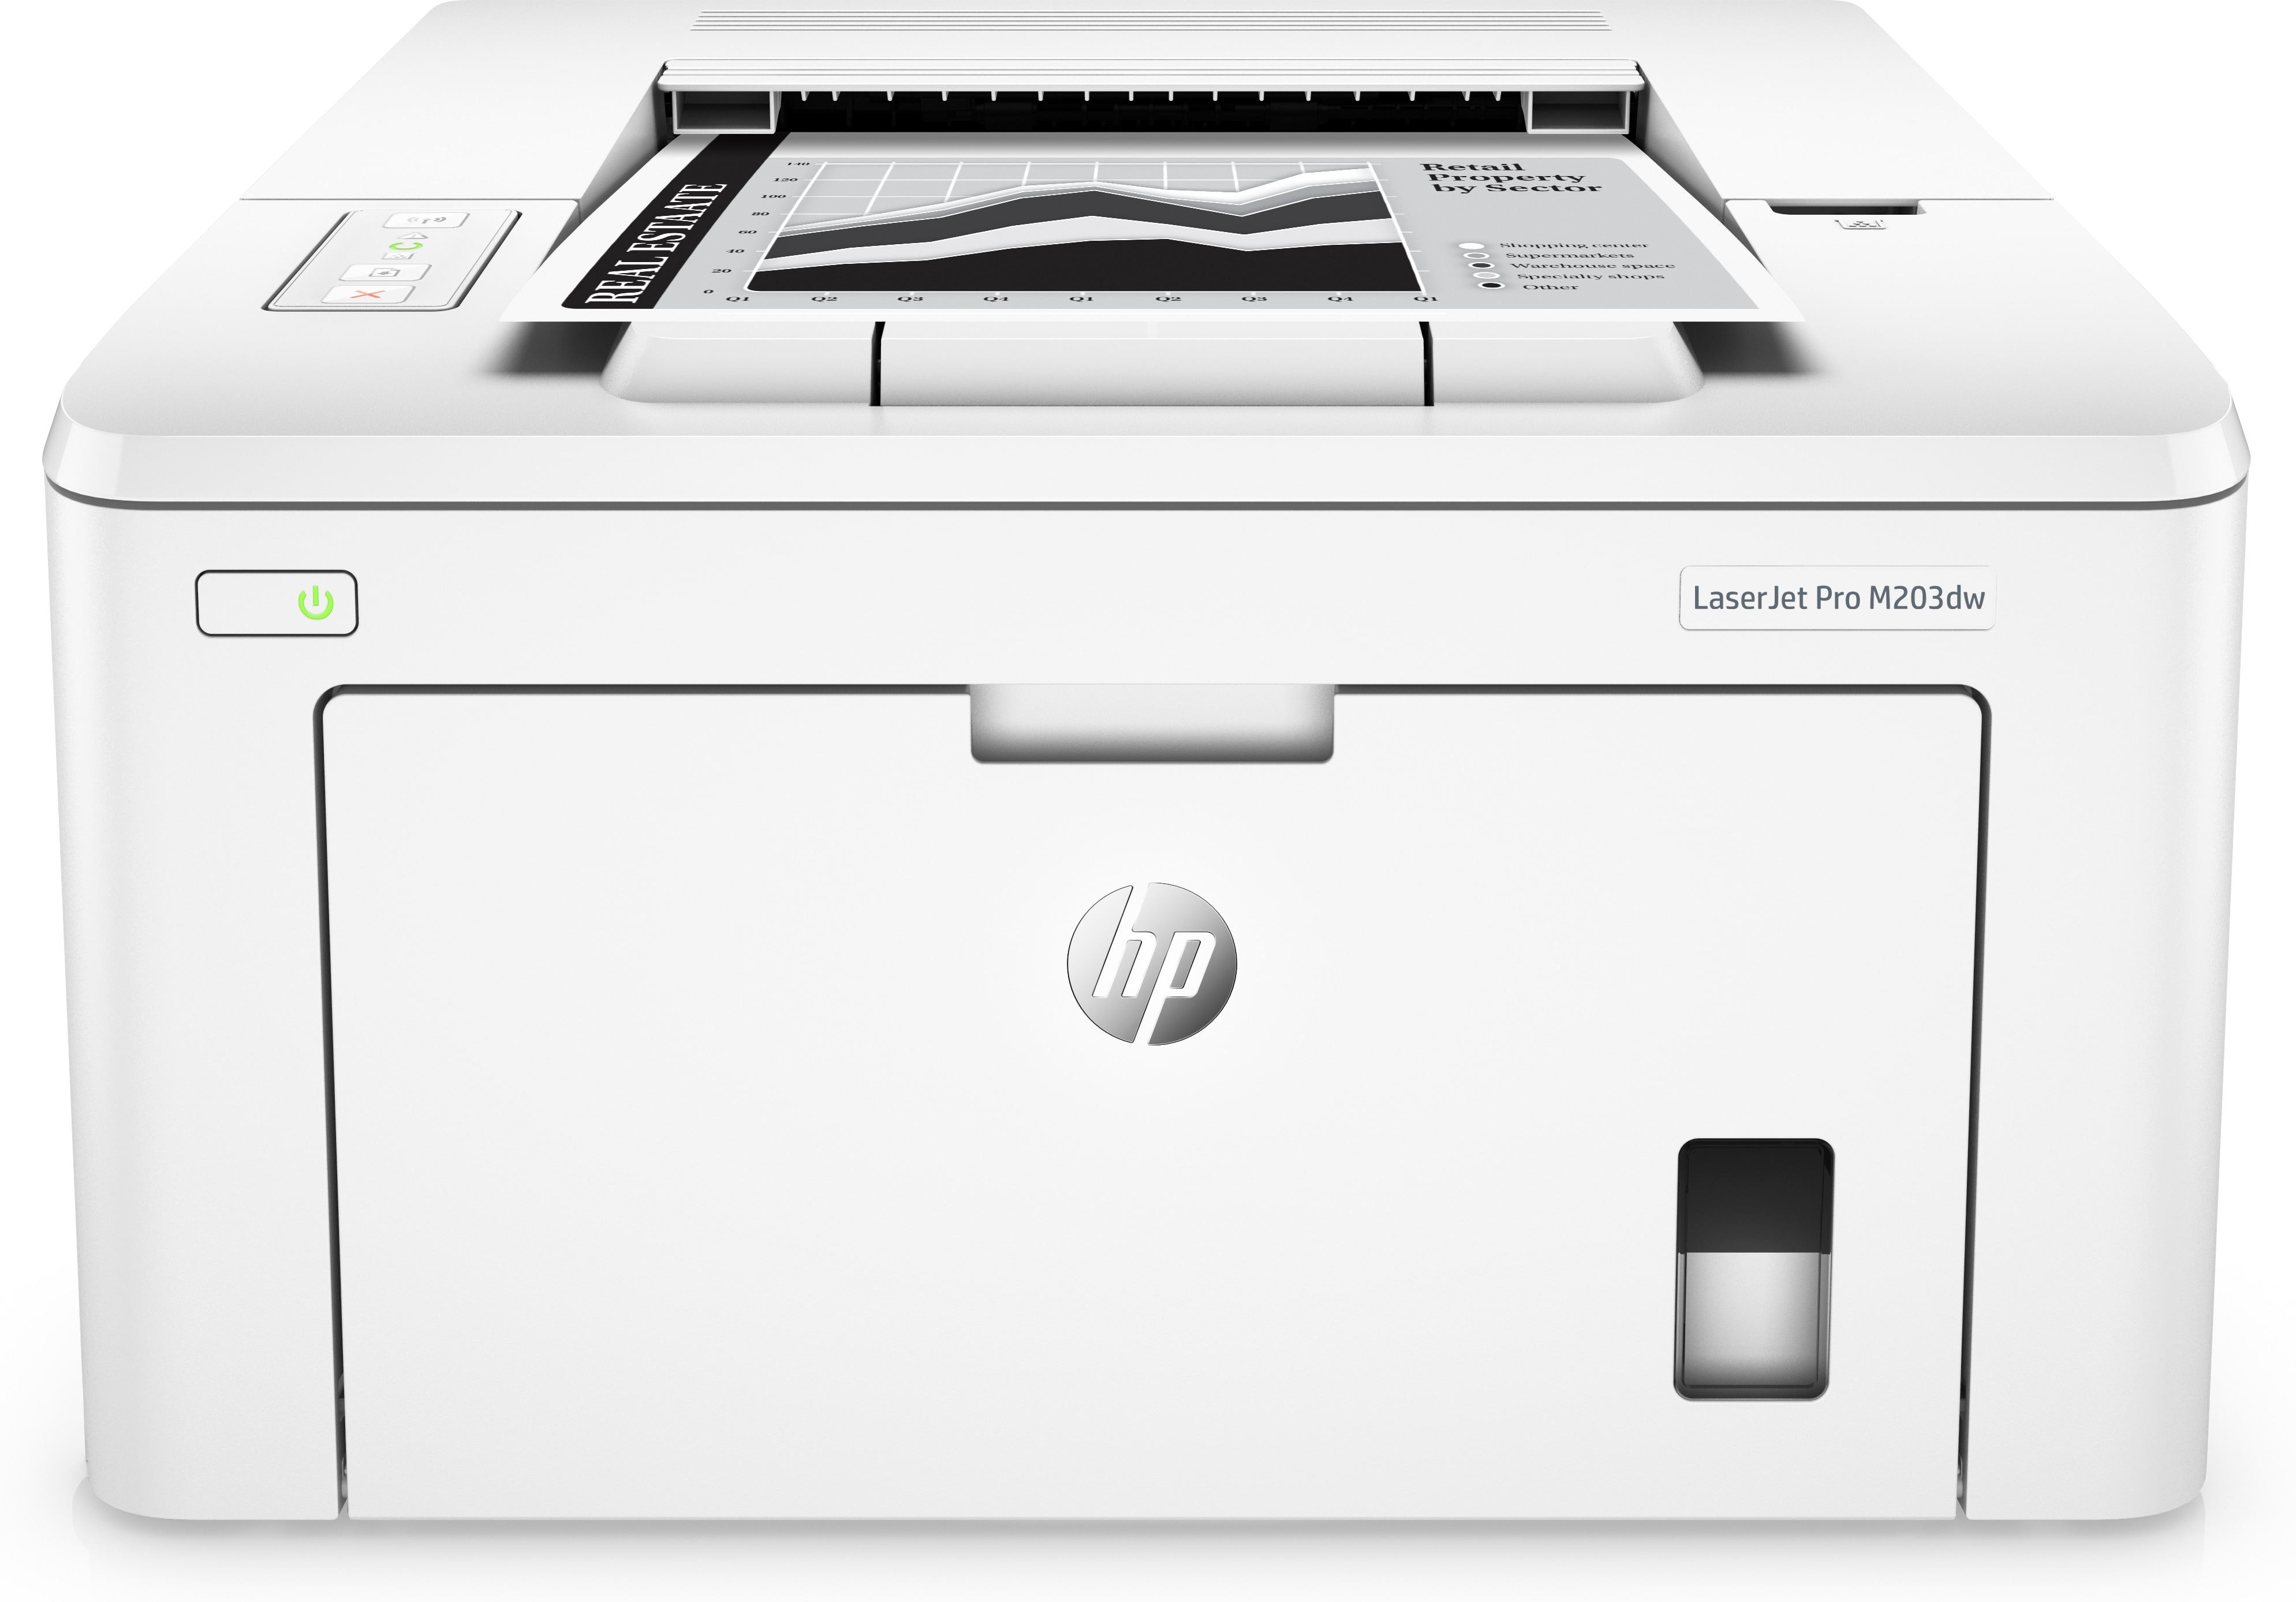 HP HP LaserJet Pro M203dw printer, Zwart-wit, Printer voor Thuis en thuiskantoor, Print, Dubbelzijdig printen